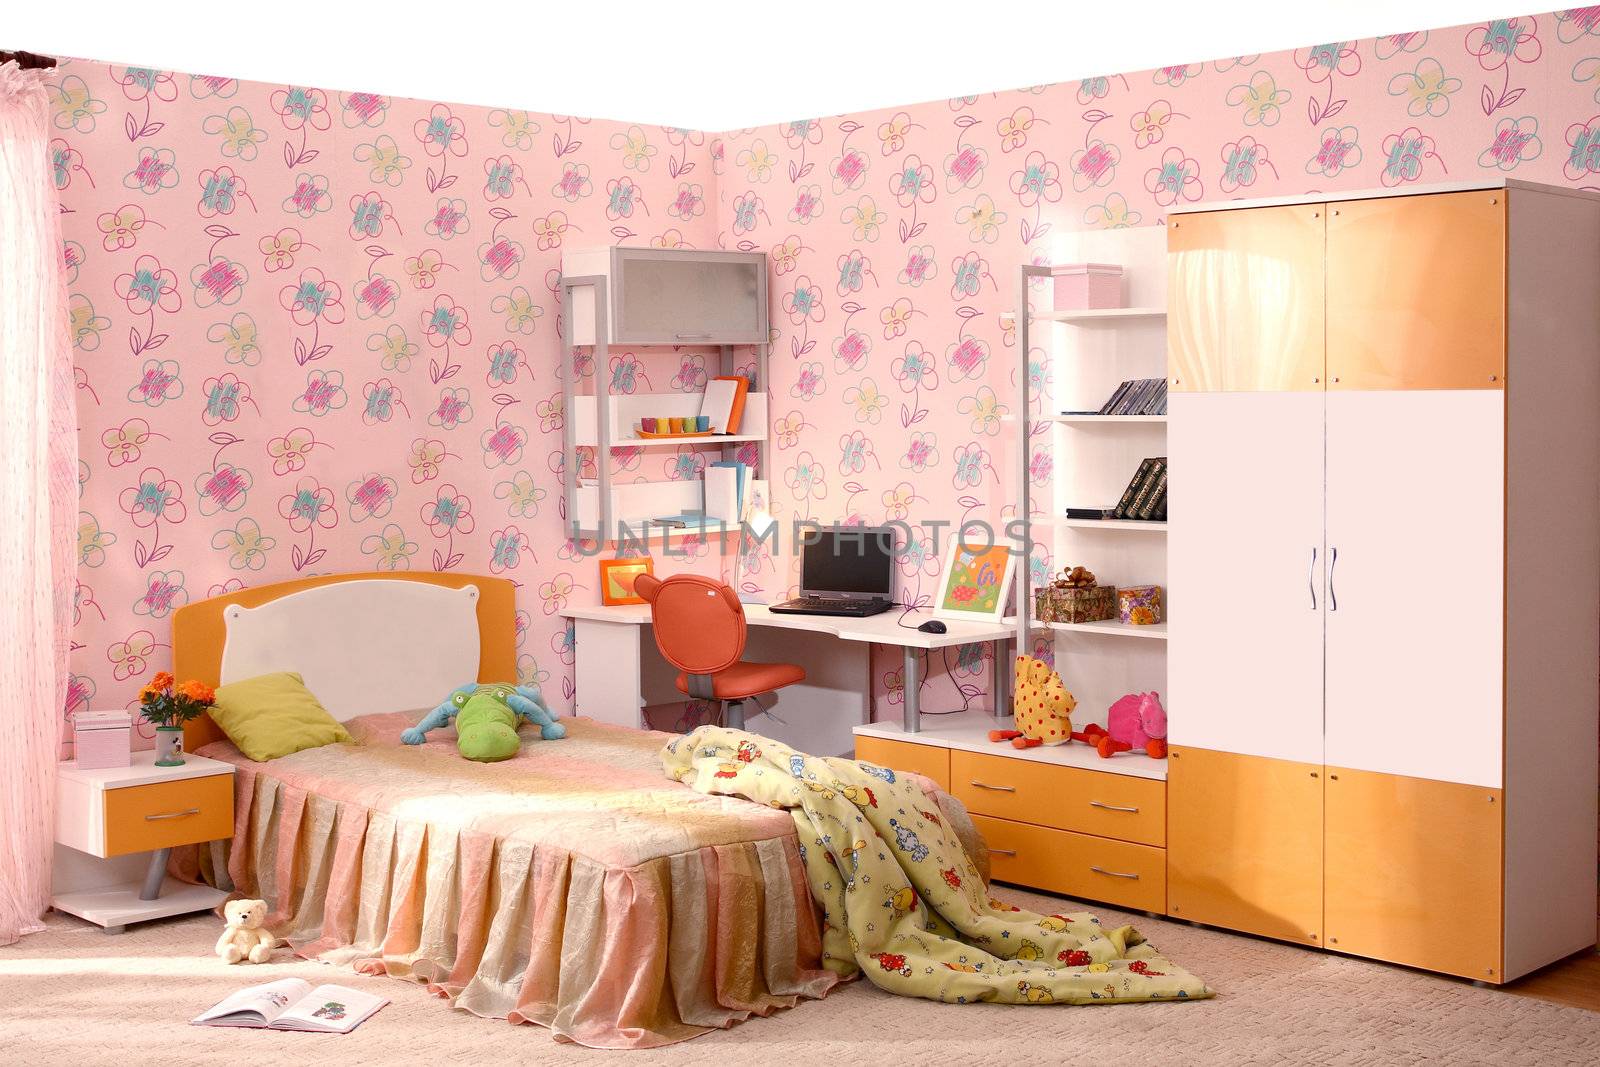  children's room by sveter